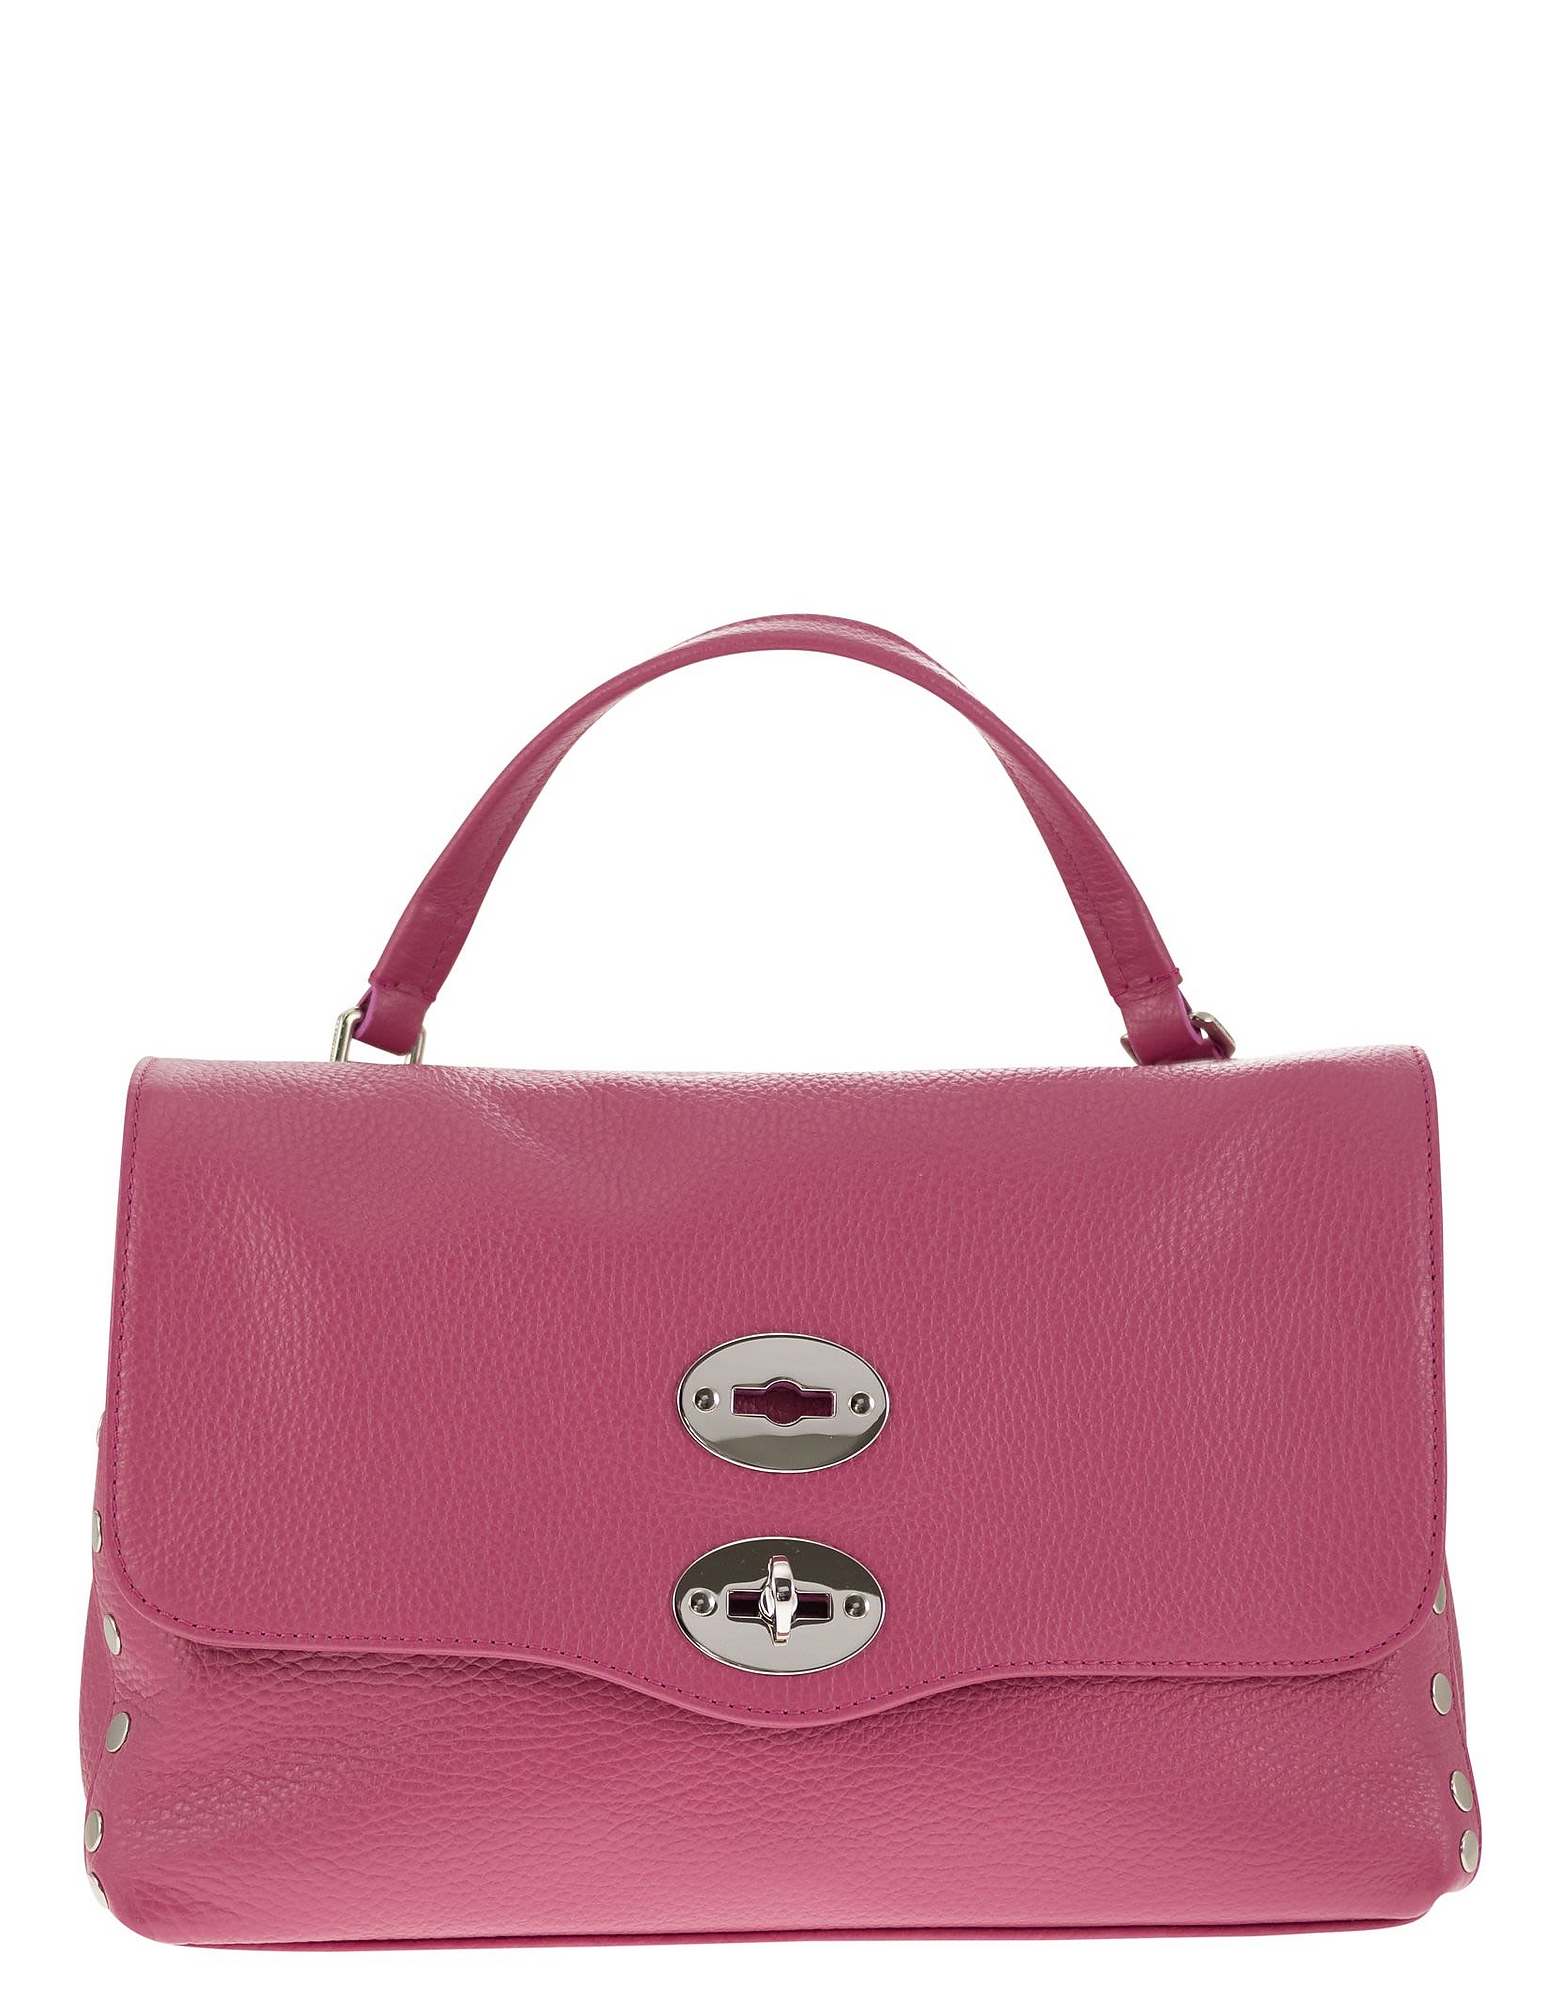 Zanellato Designer Handbags Postina - Daily S Bag In Rose